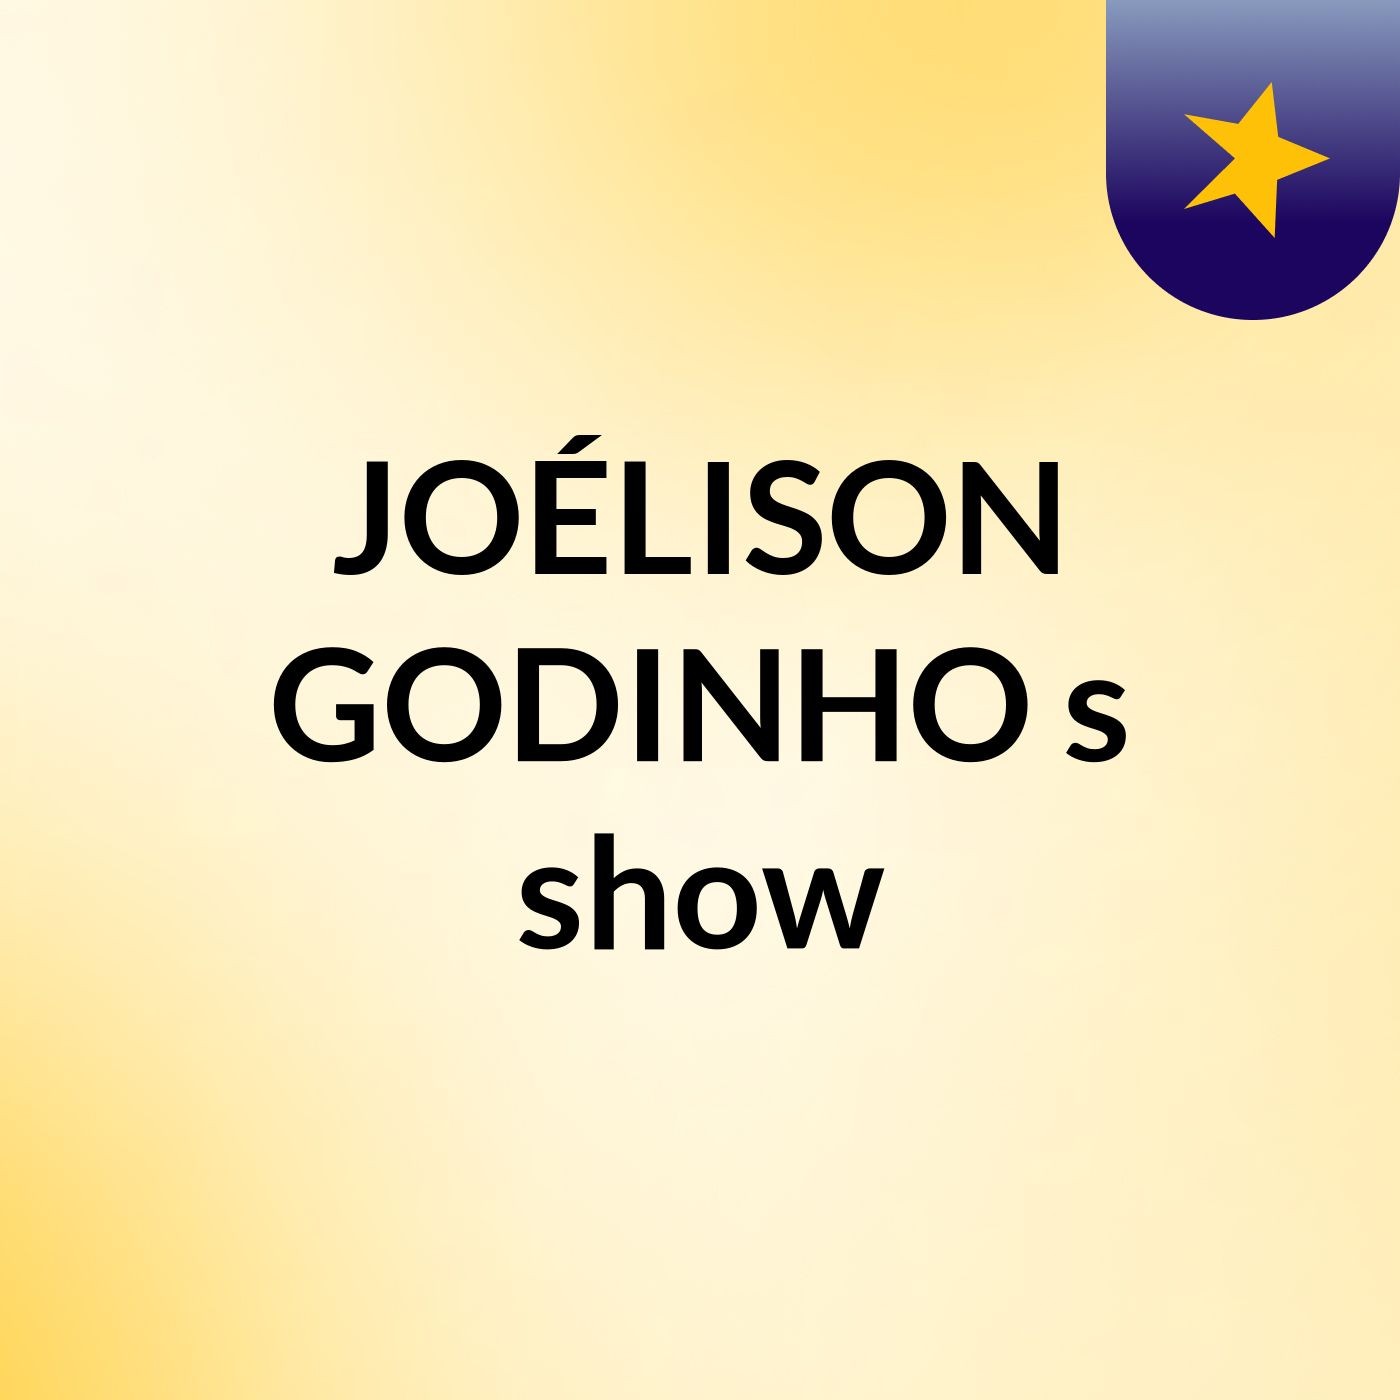 JOÉLISON GODINHO's show